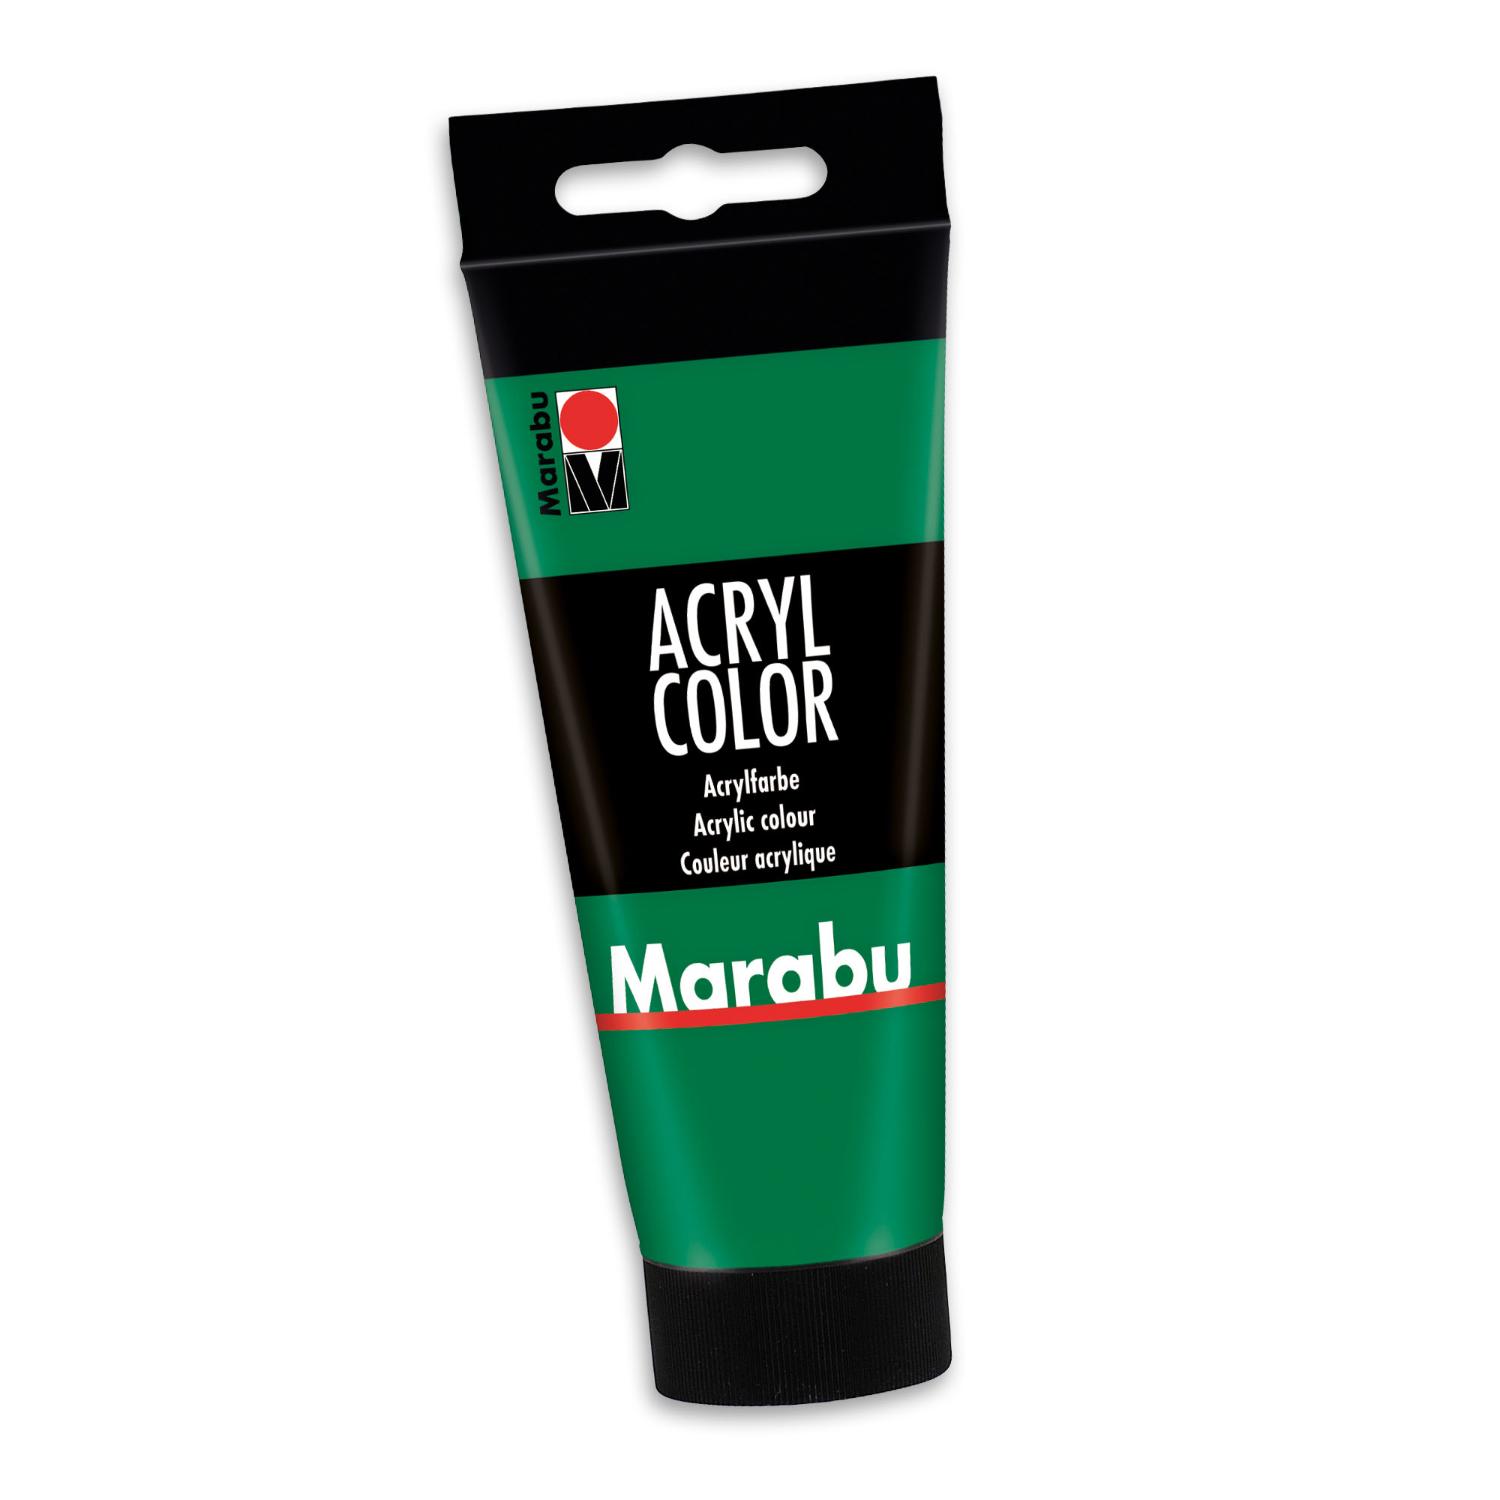 Marabu Acrylfarbe Acryl Color, 100 ml, saftgrn 067